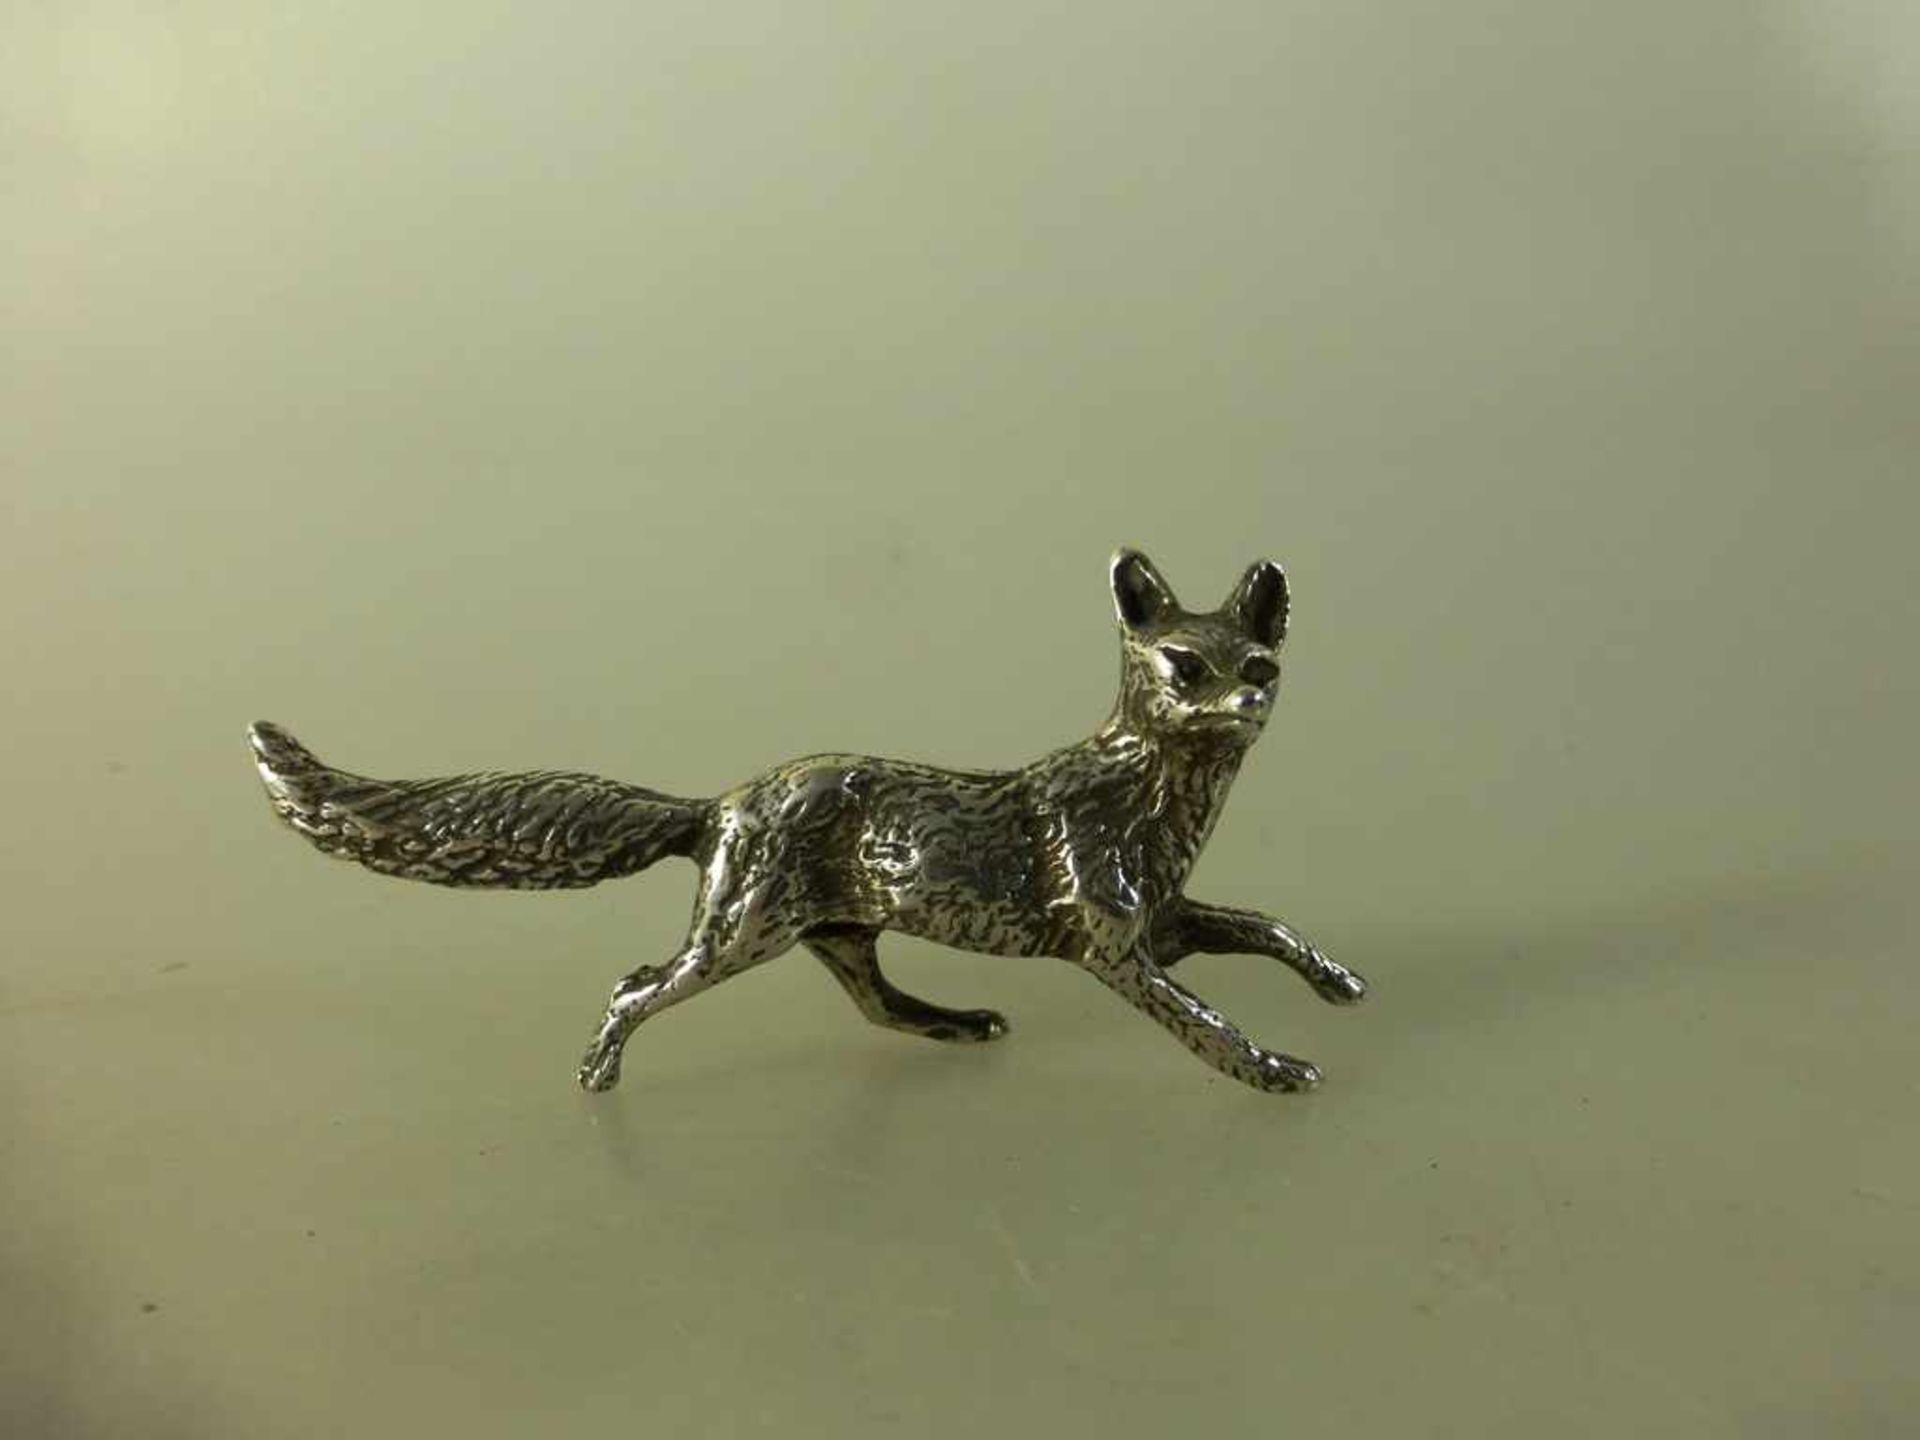 Kleine Tierfigur "Fuchs", Silber 800, l. 6cm, h. 3cm, 20g.- - -18.00 % buyer's premium on the hammer